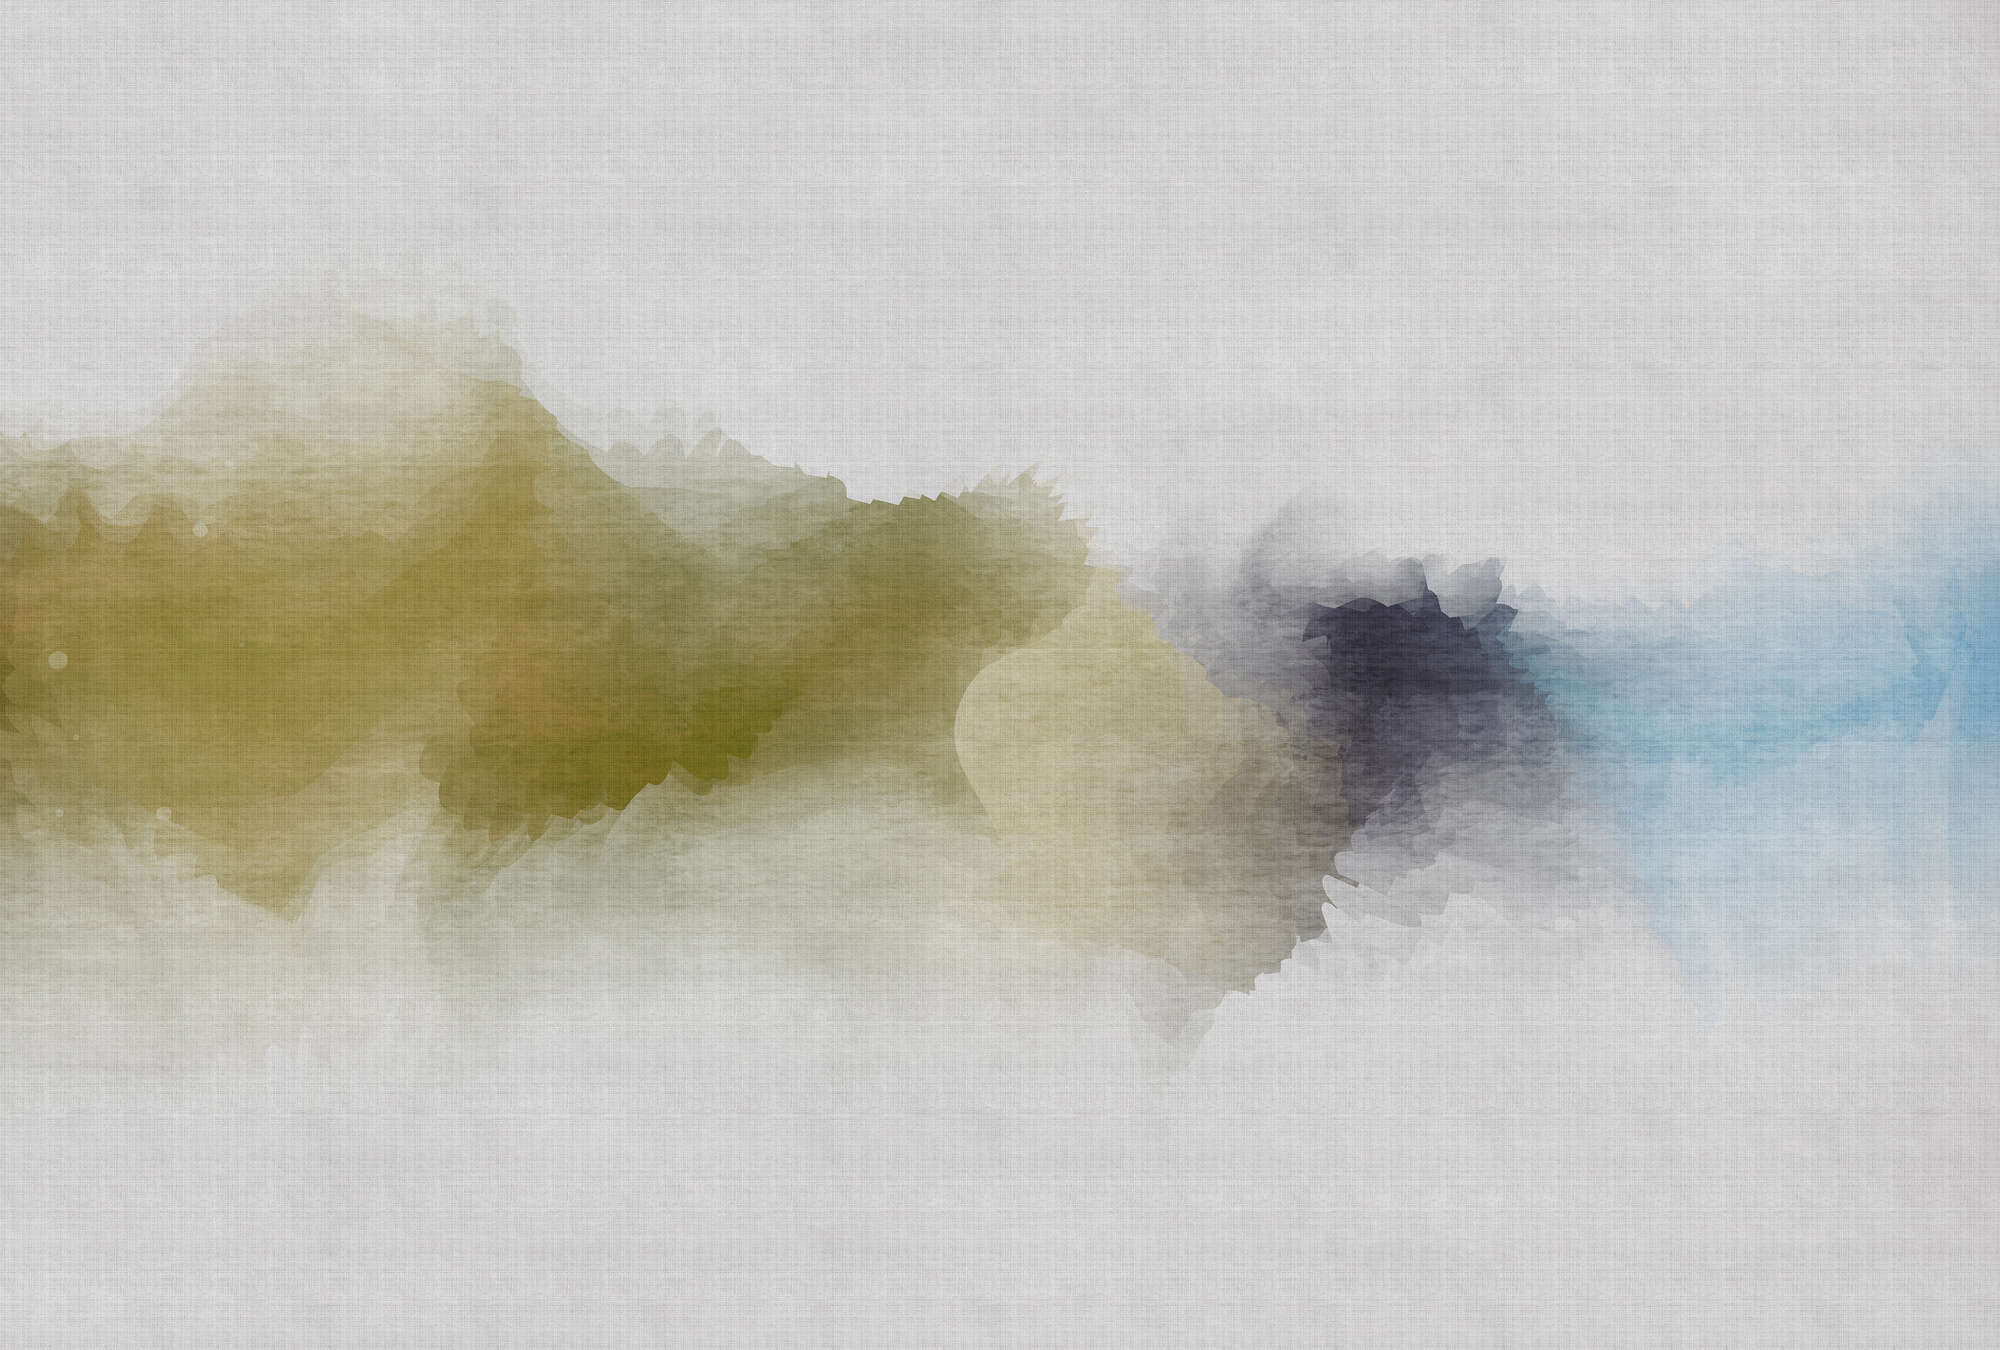             Daydream 3 - Digital behang bewolkt aquarelpatroon - natuurlijke linnenstructuur - Blauw, Geel | structuurvlies
        